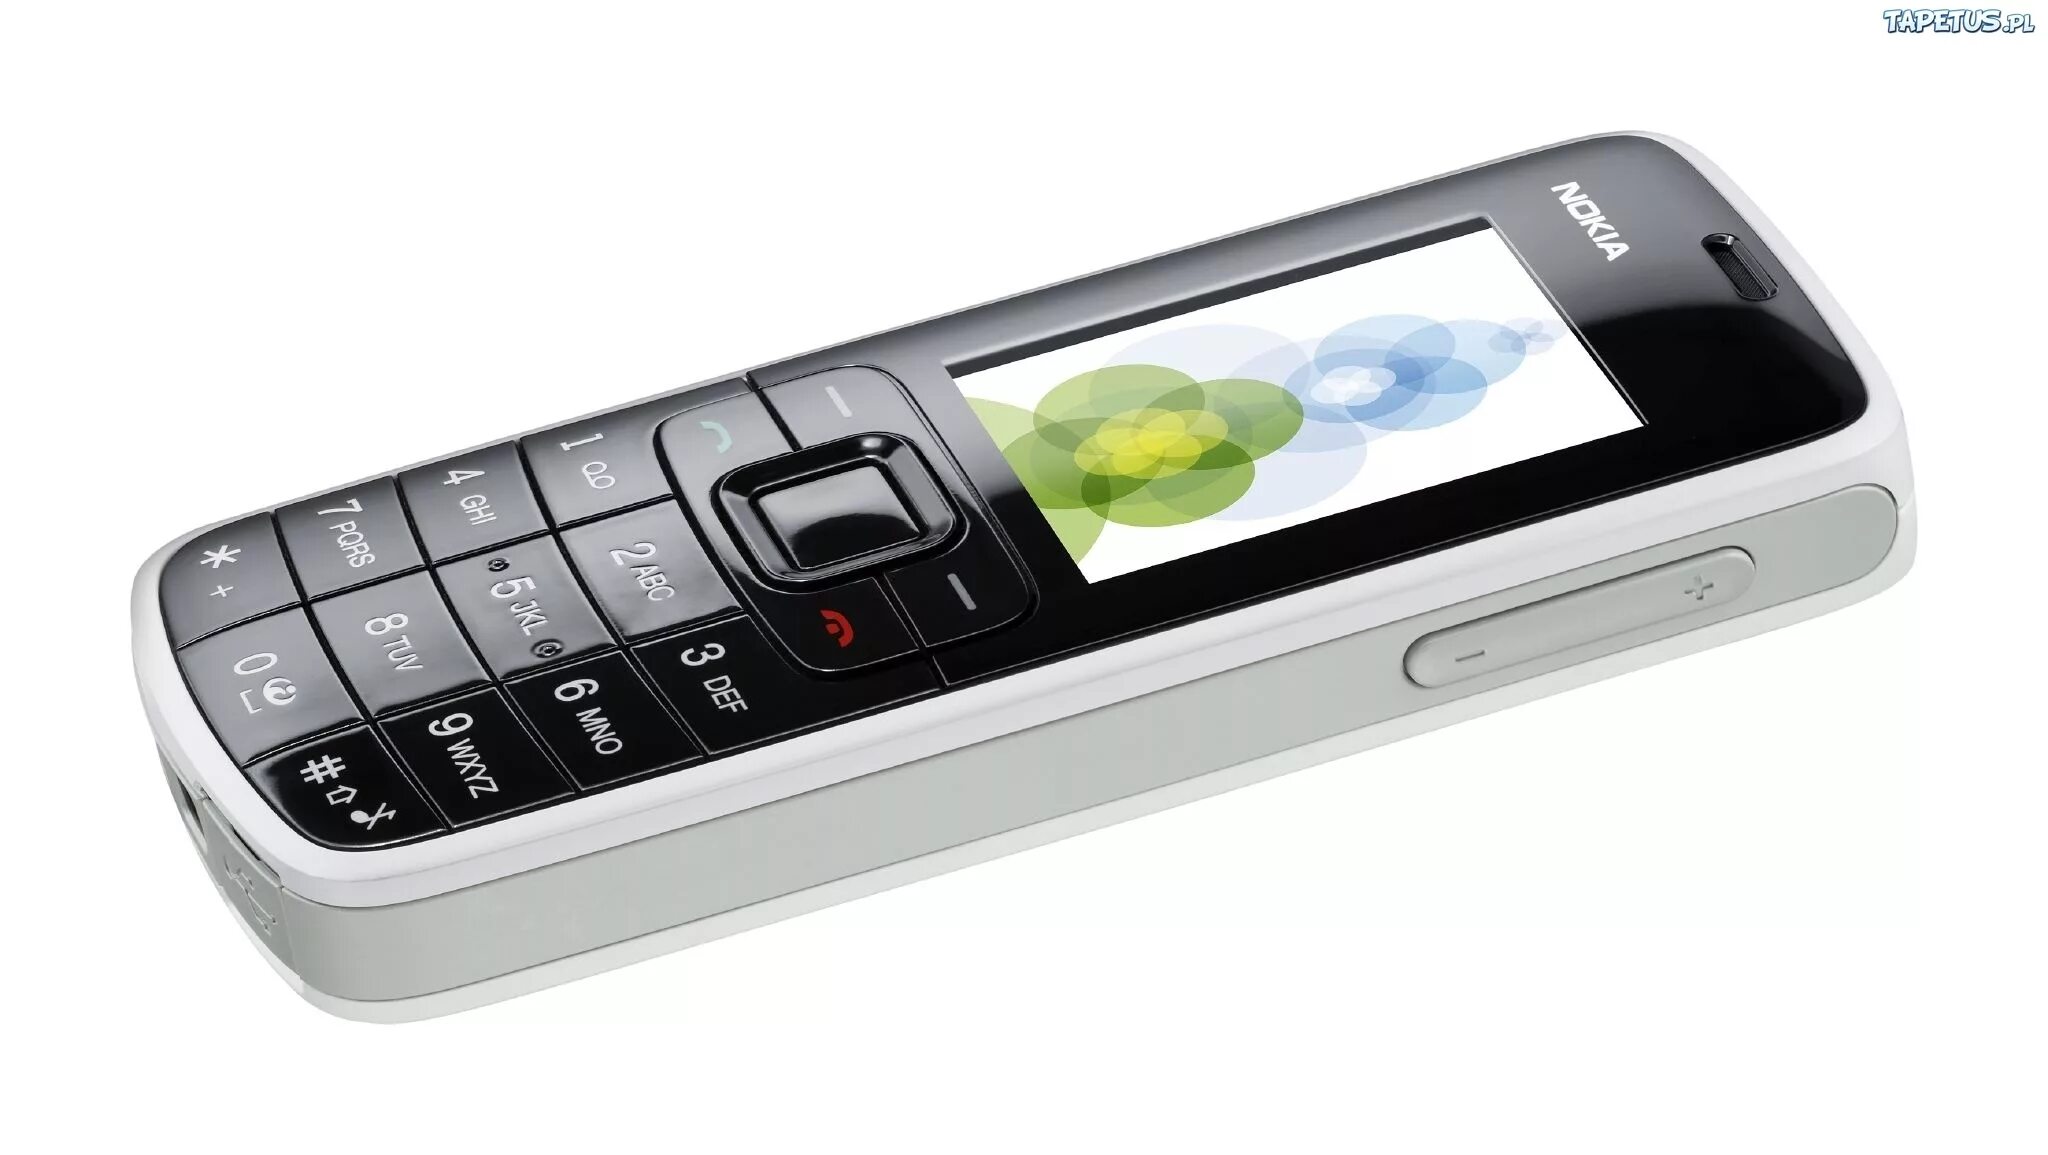 Охотно телефон. 3110.Nokia Nokia 3110. Nokia 3110 Evolve. Nokia кнопочный 3110. Современные телефоны.